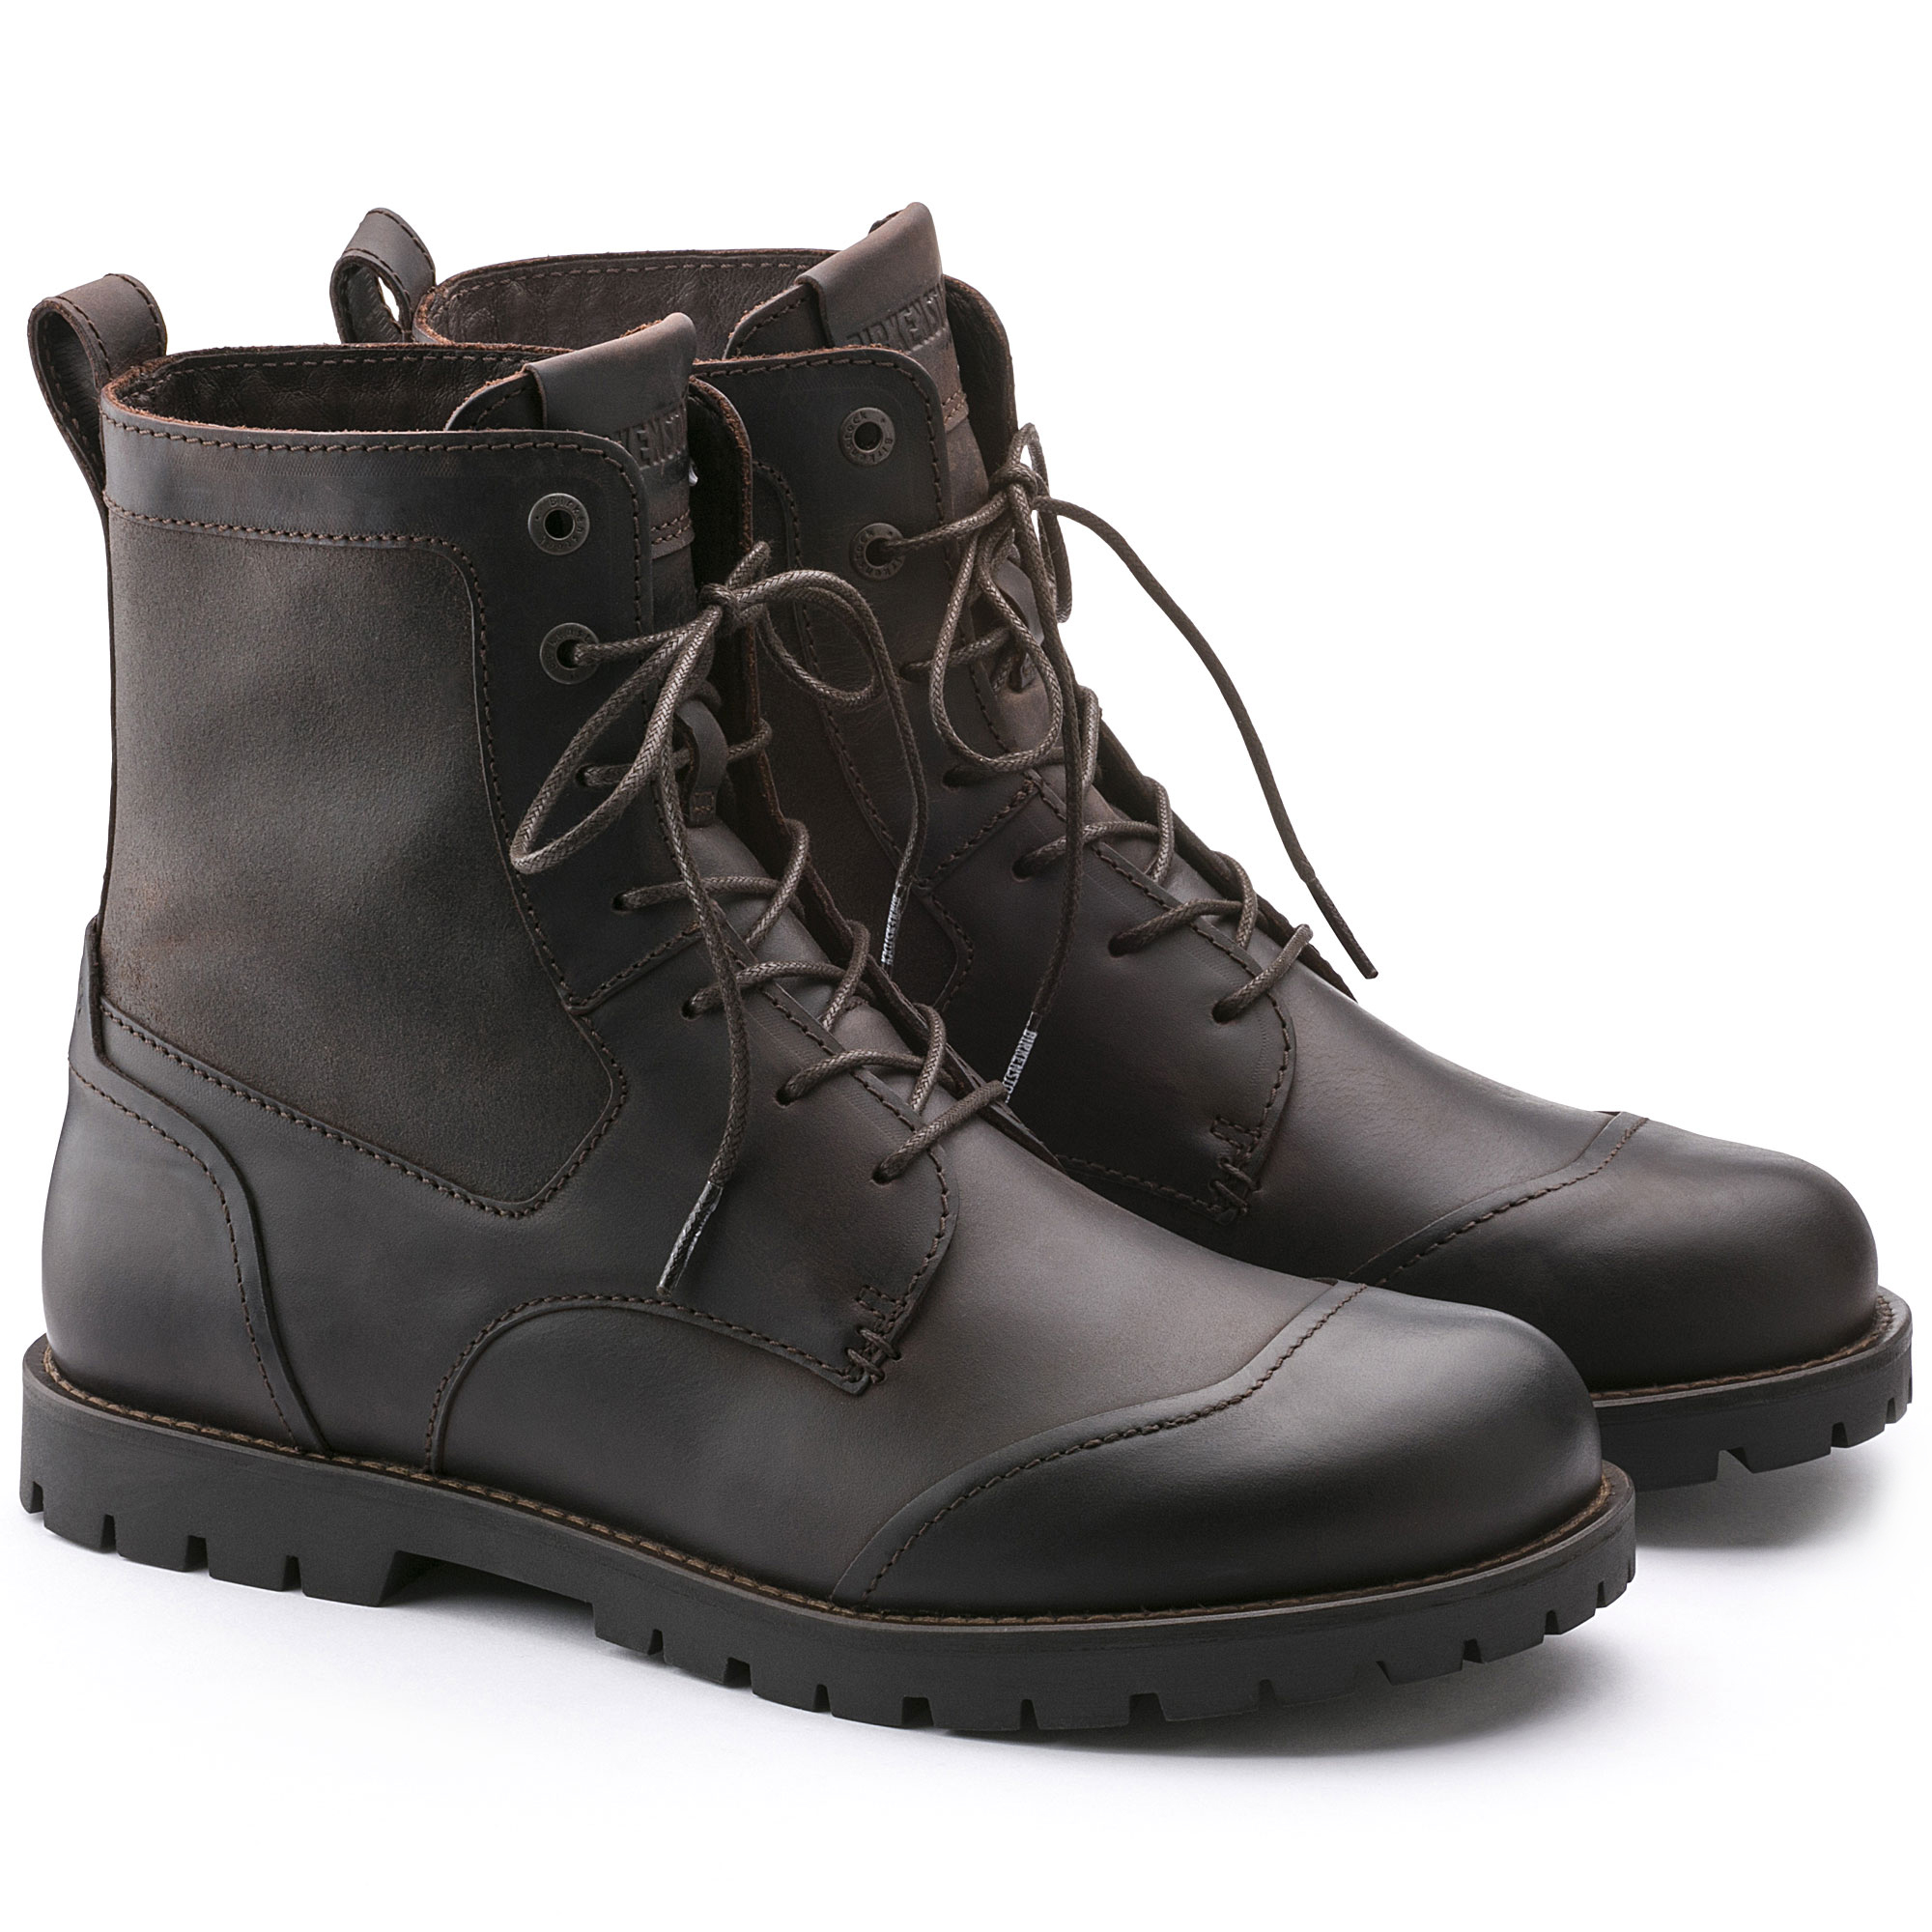 birkenstock boots men's